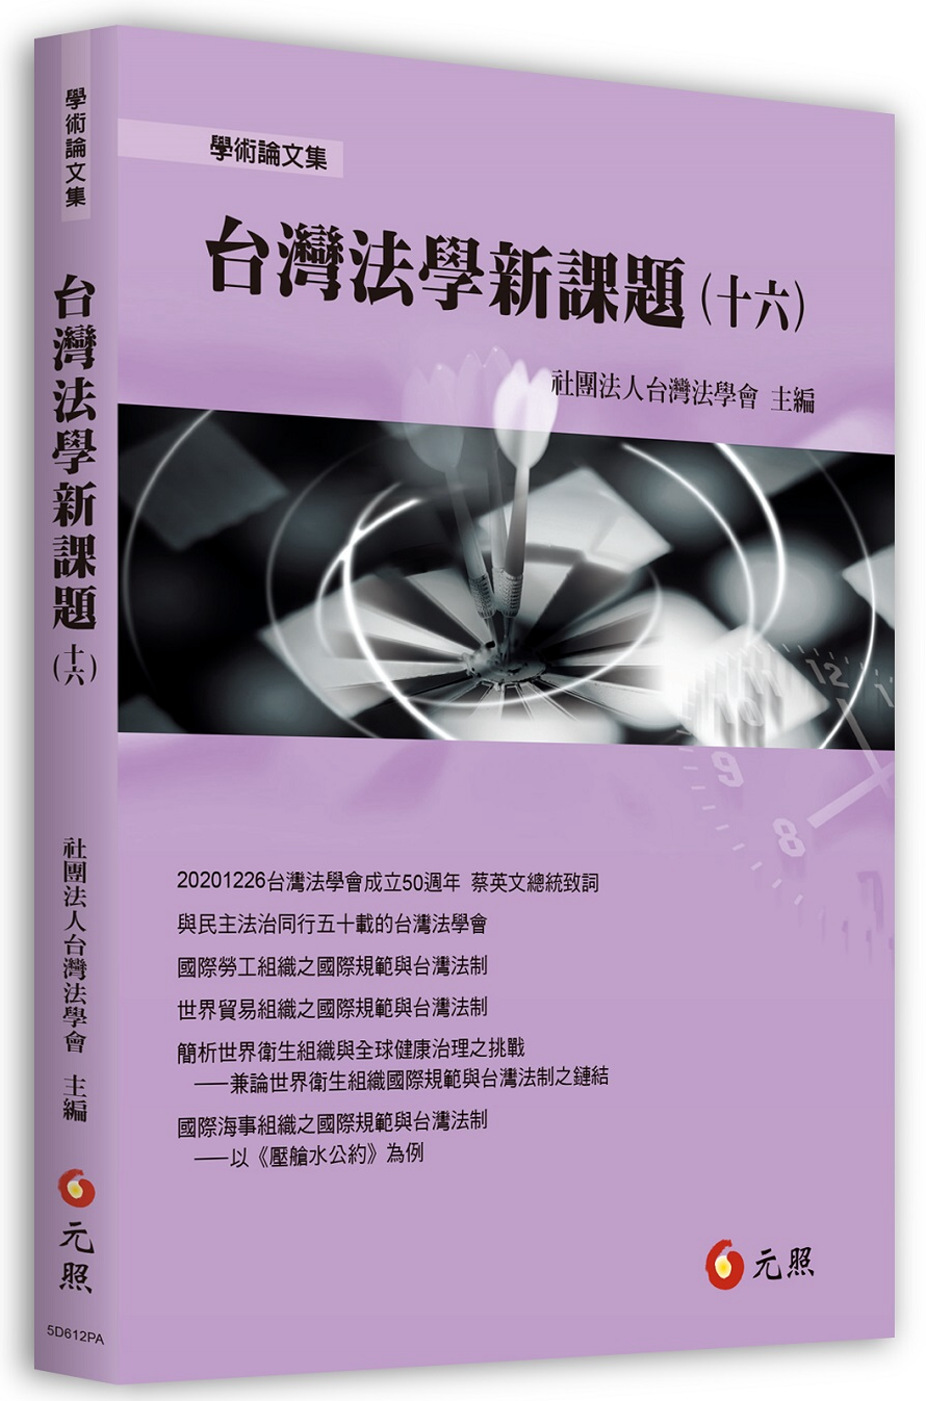 台灣法學新課題(十六)